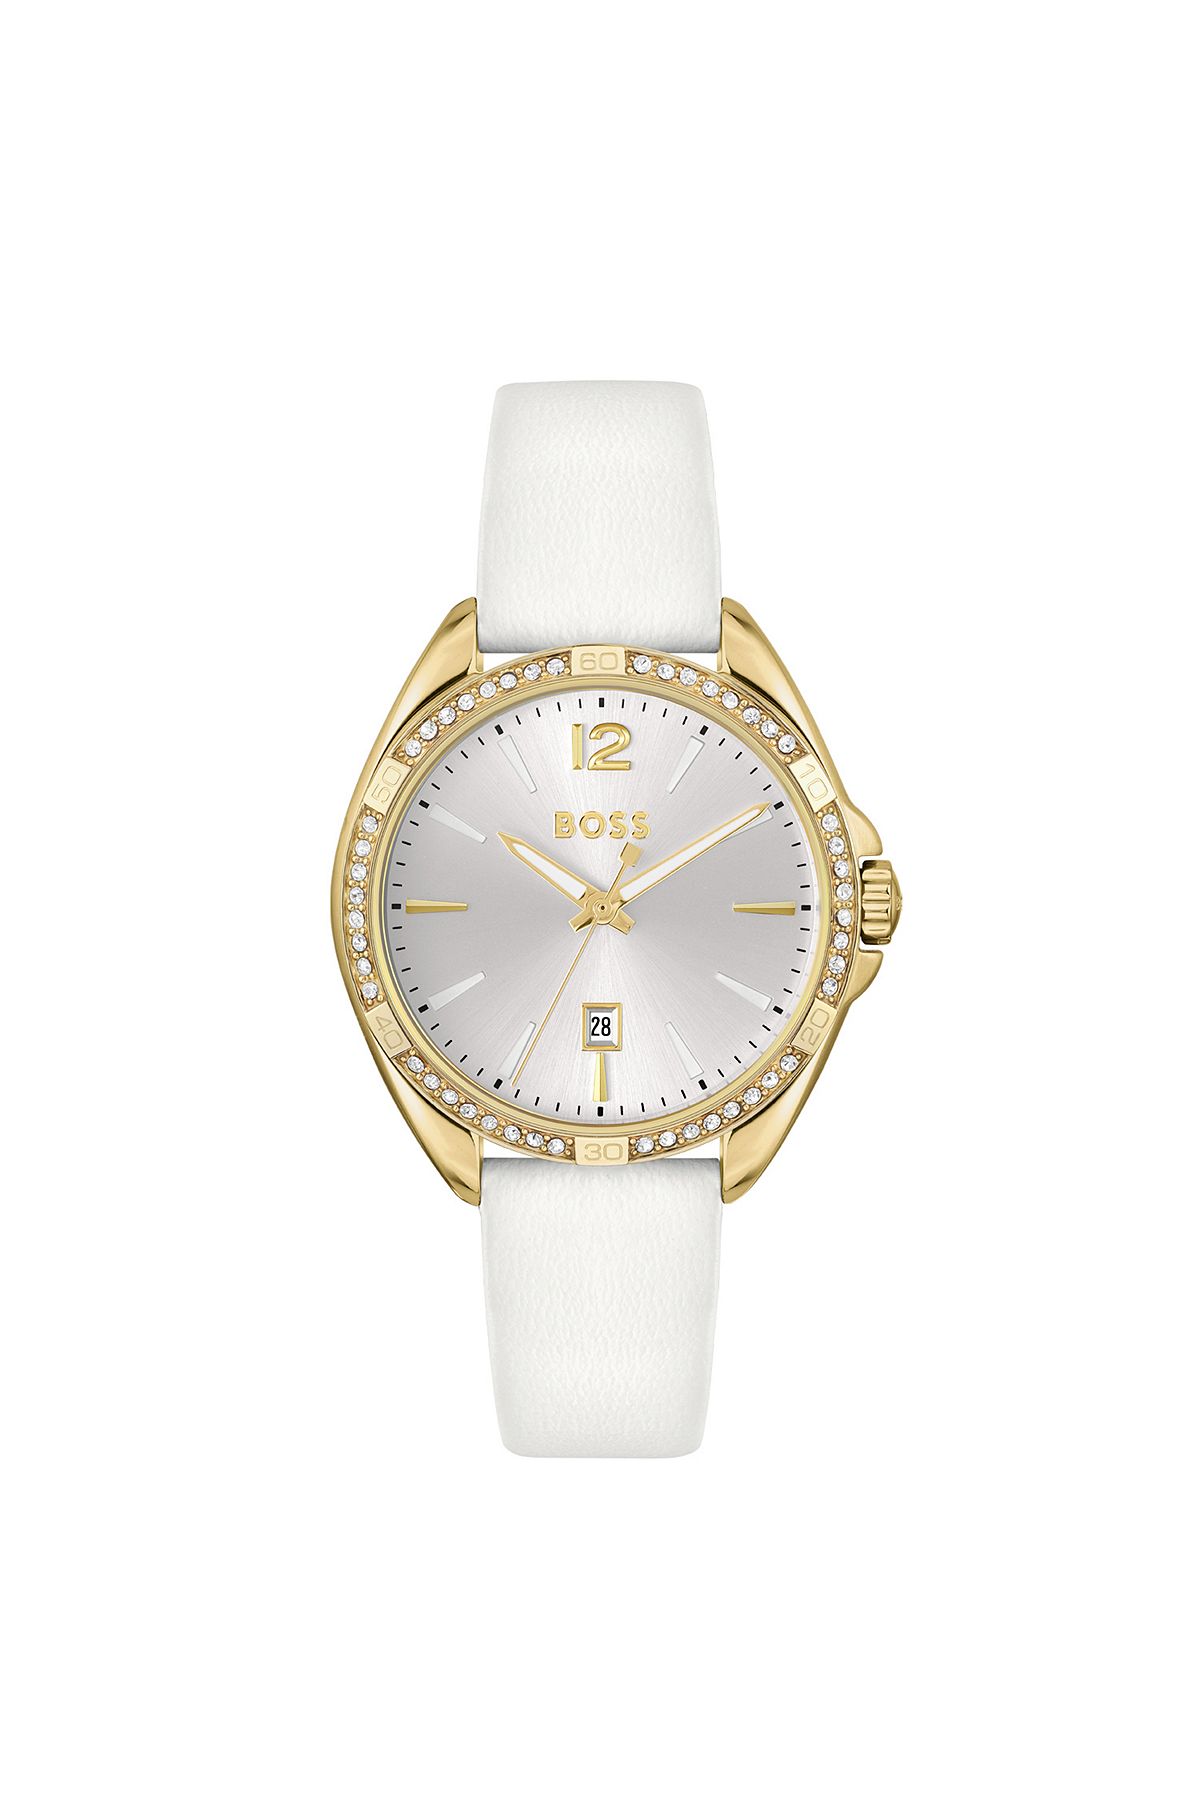 Goldfarbene Uhr mit kristallbesetzter Lünette, Weiß